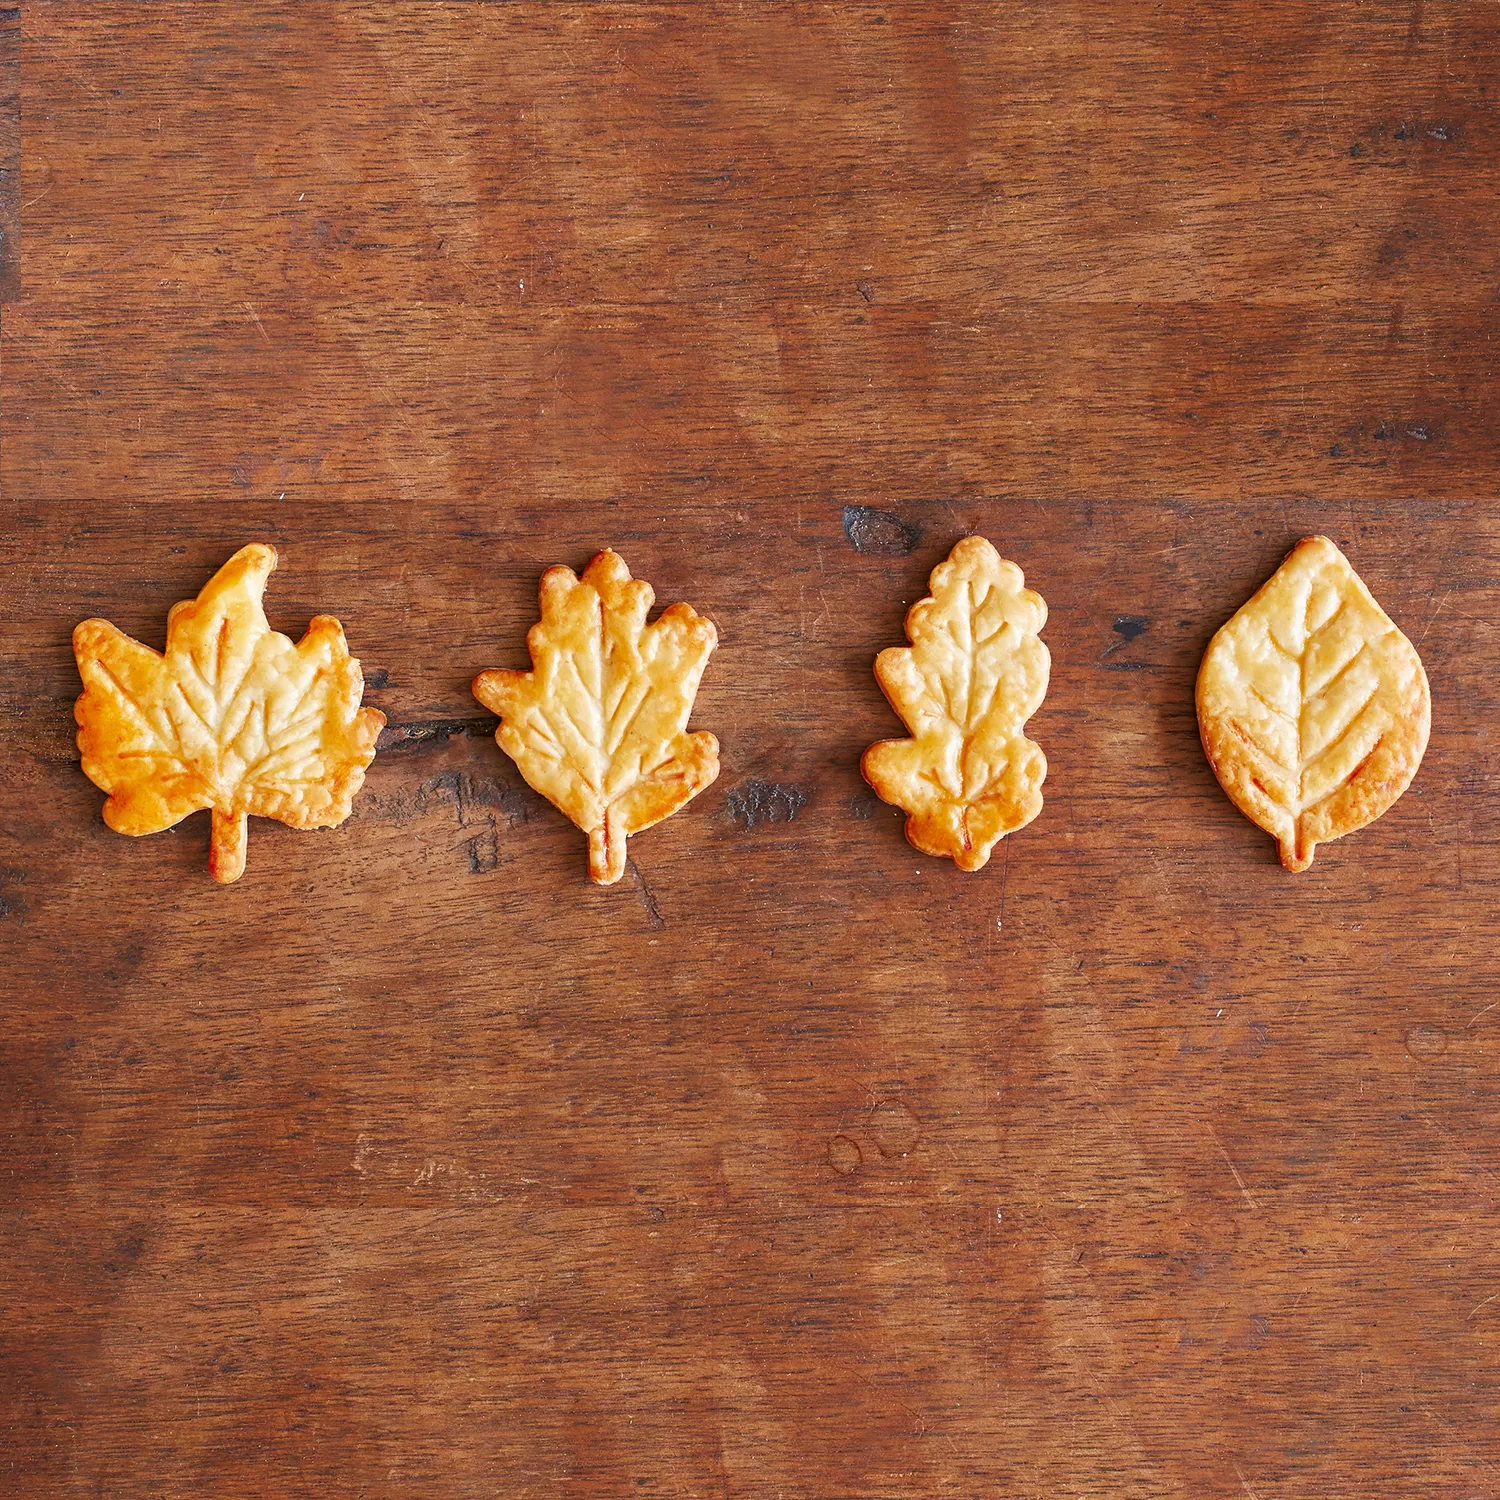 Leaf Pie Crust Cutters, Set of 4